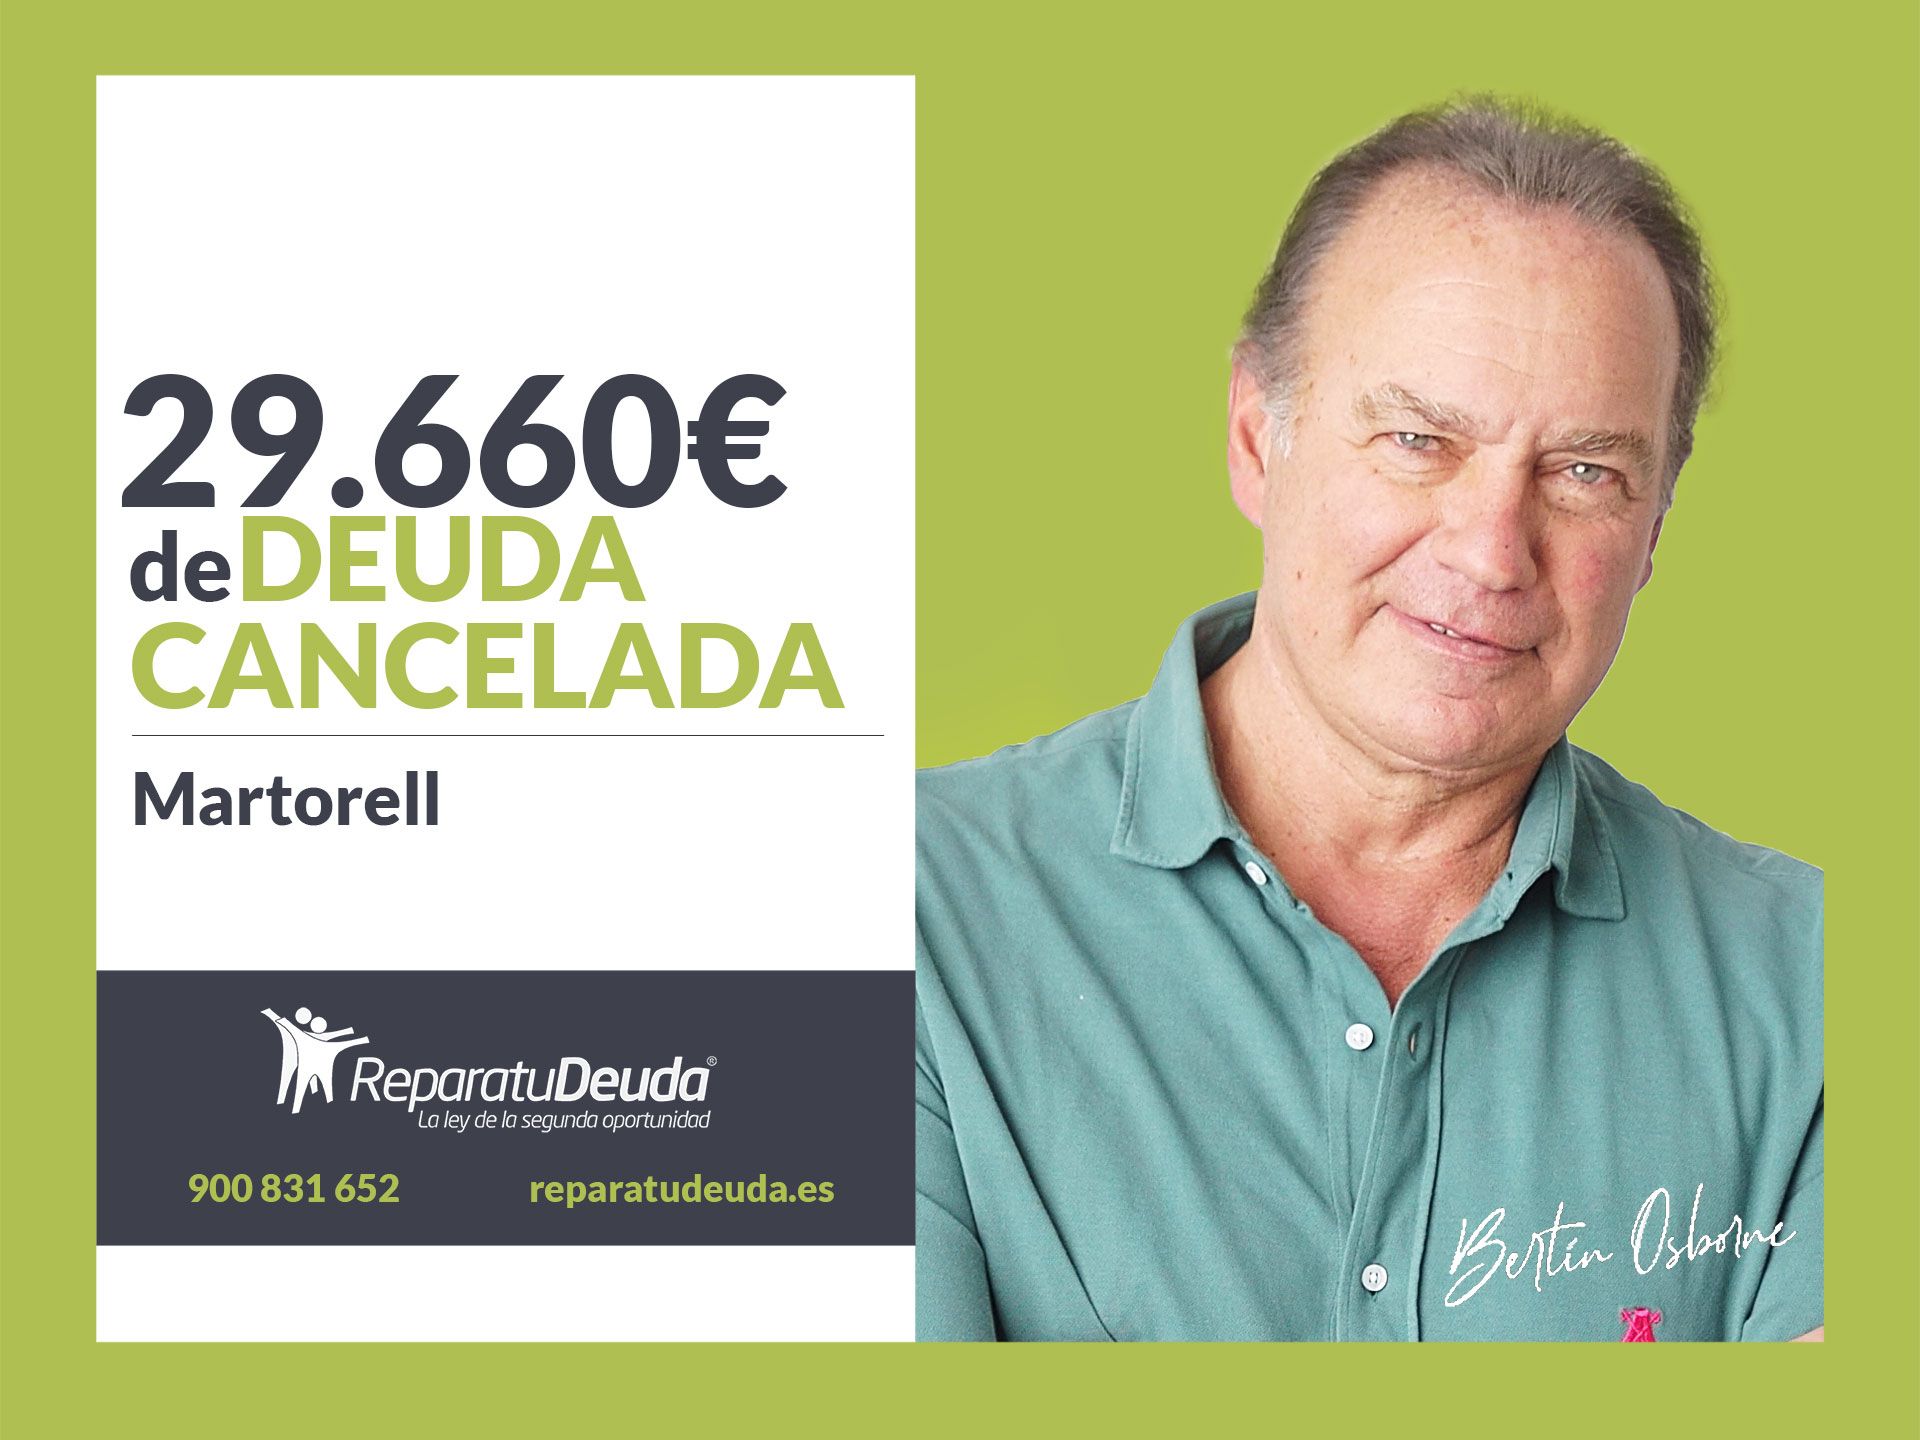 Repara tu Deuda Abogados cancela 29.660? en Martorell (Barcelona) con la Ley de Segunda Oportunidad